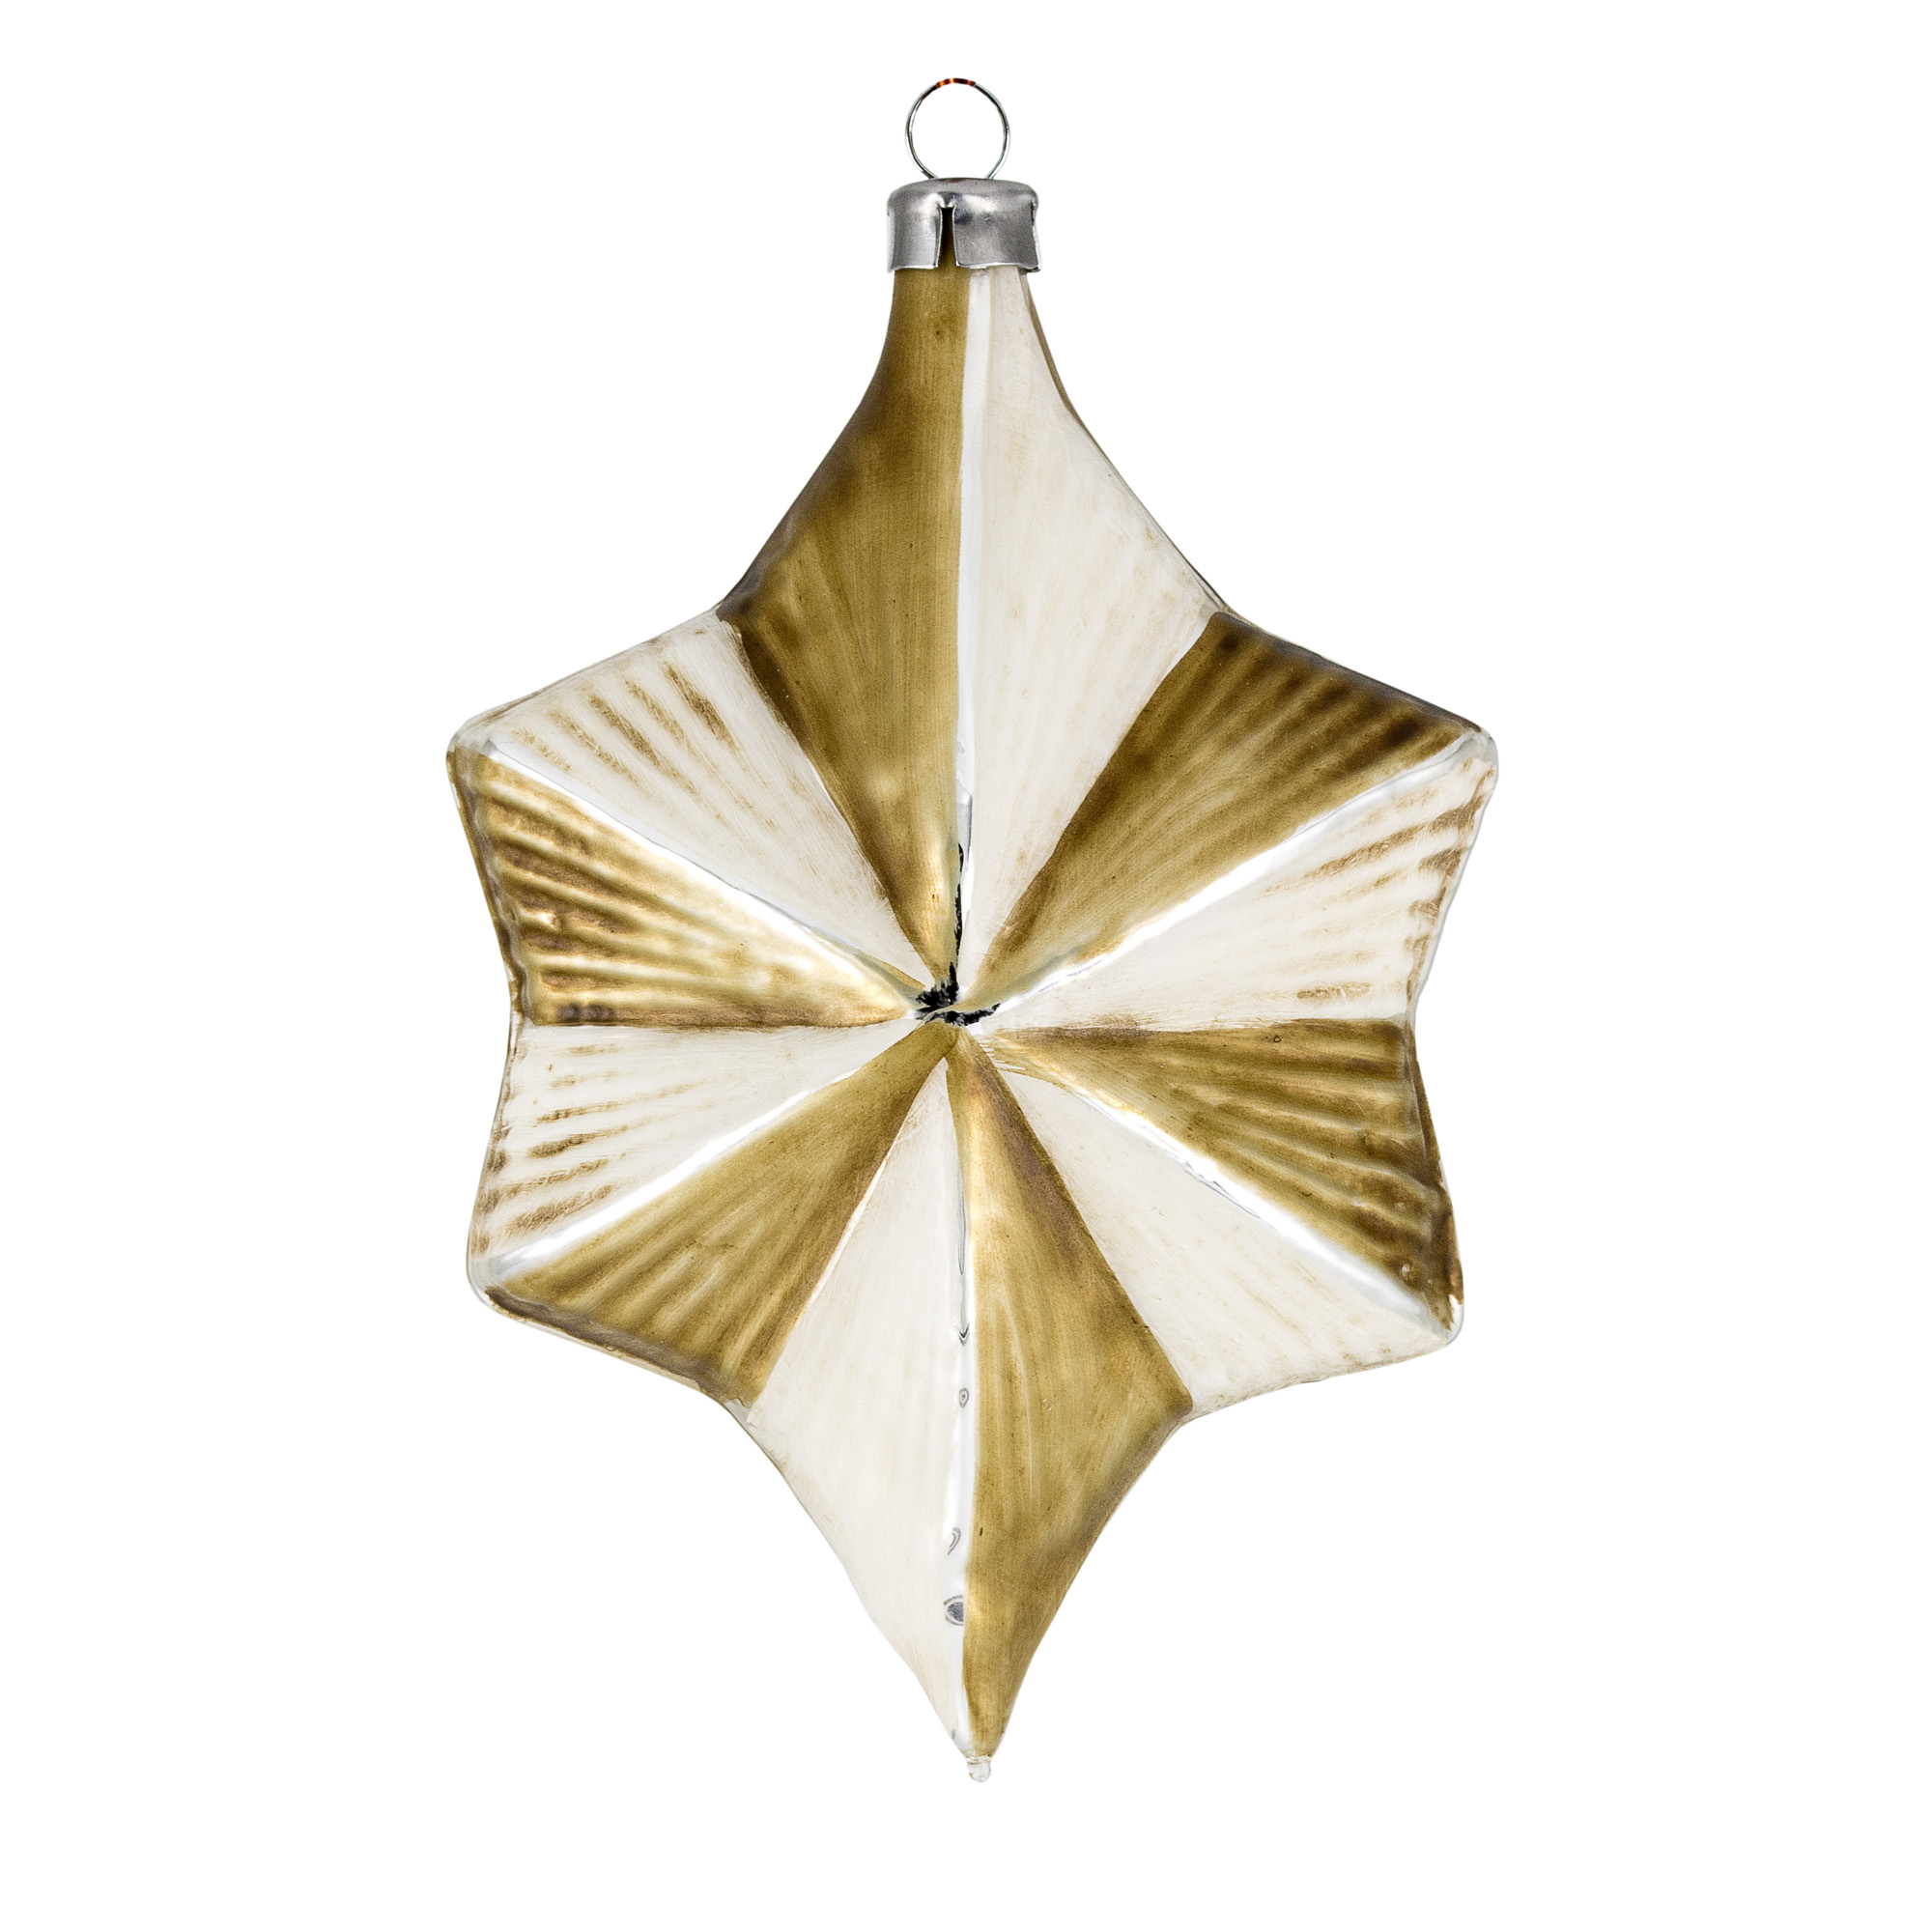 Art Déco Edition "Elfenbein - Gold" 10 Teile, in dekorativer Holzbox verpackt